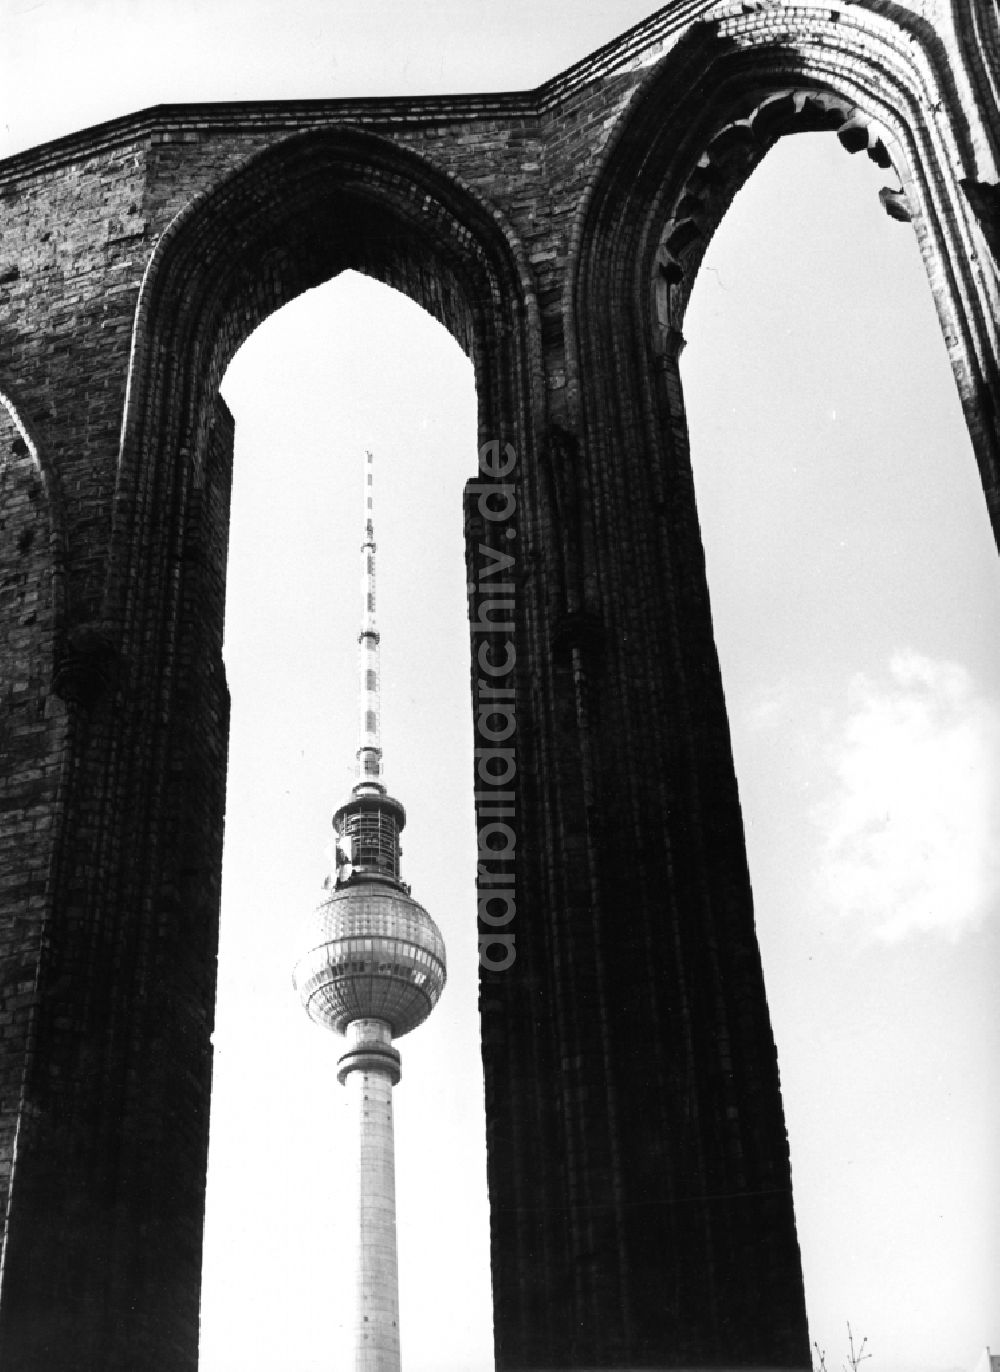 DDR-Bildarchiv: Berlin - Ruine der Franziskaner-Klosterkirche am Fernsehturm im Ortsteil Mitte in Berlin, der ehemaligen Hauptstadt der DDR, Deutsche Demokratische Republik